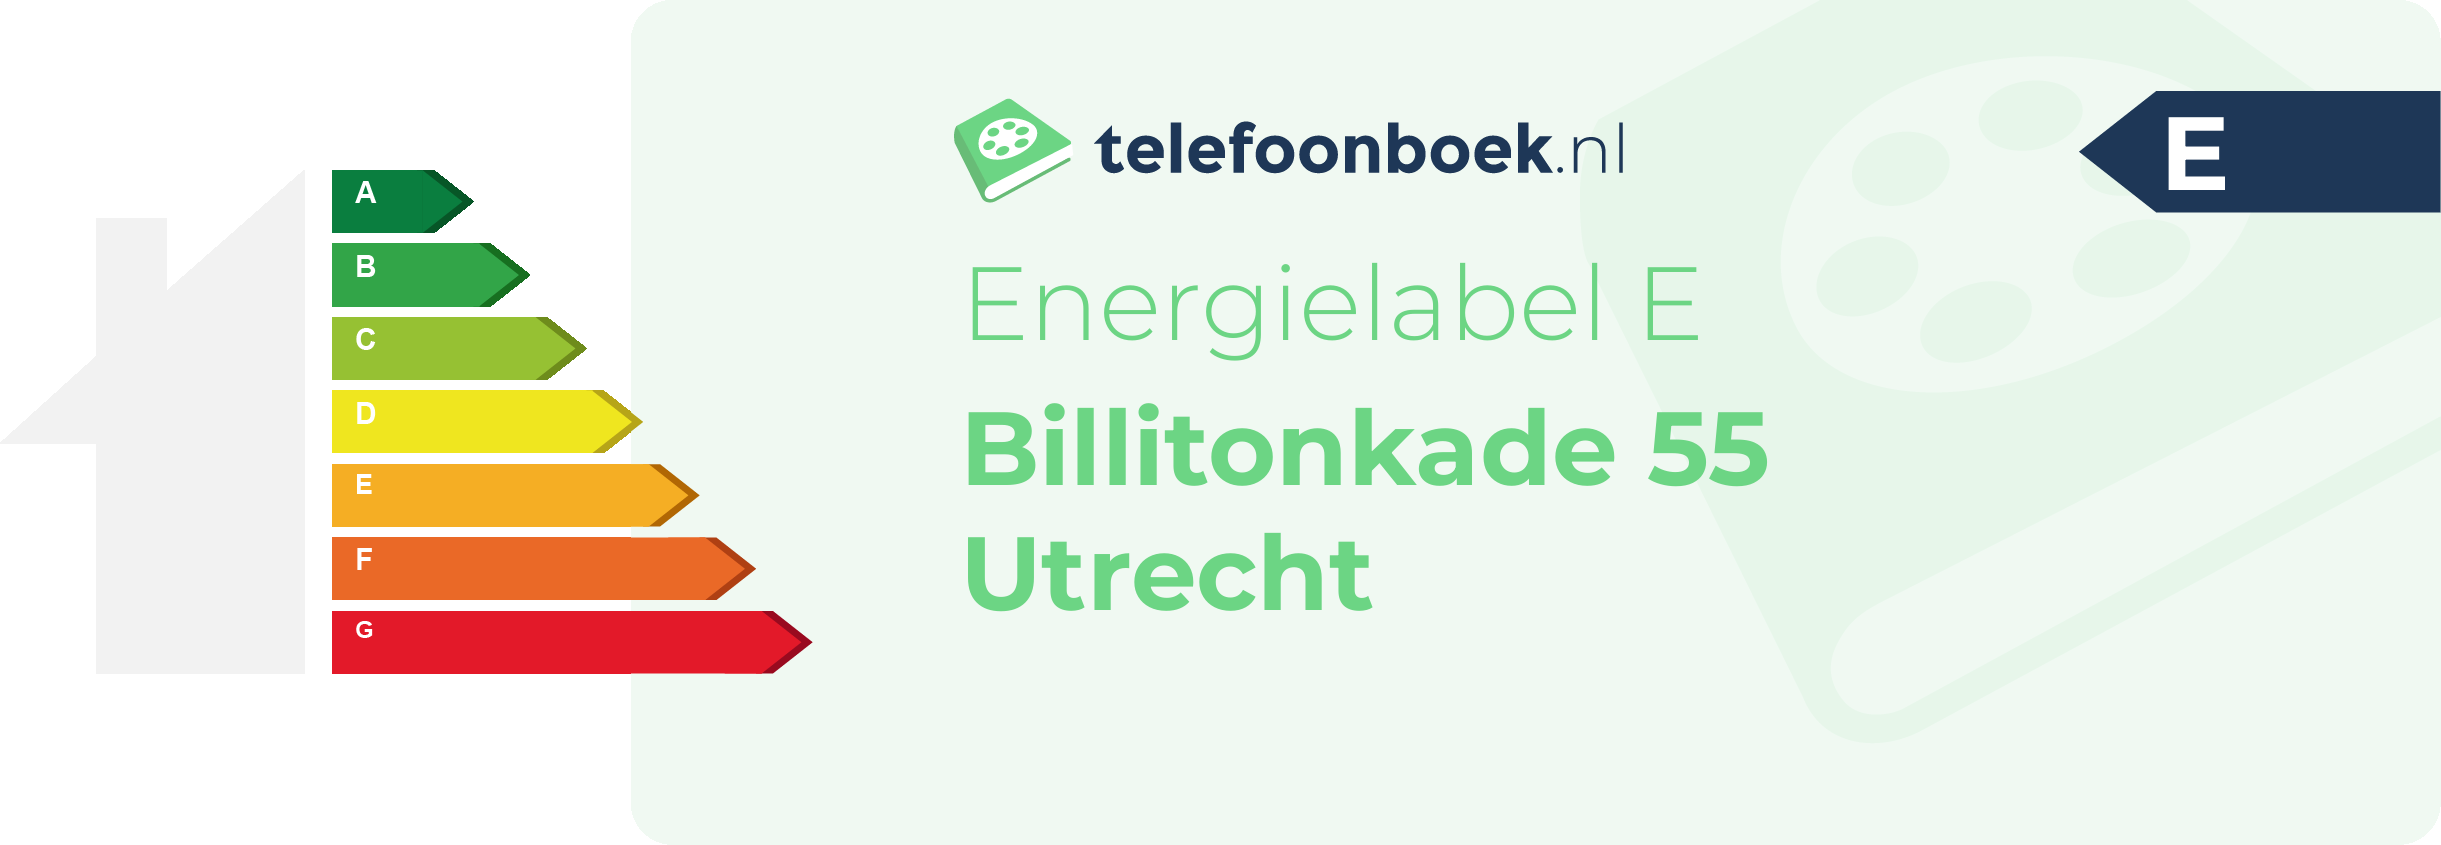 Energielabel Billitonkade 55 Utrecht